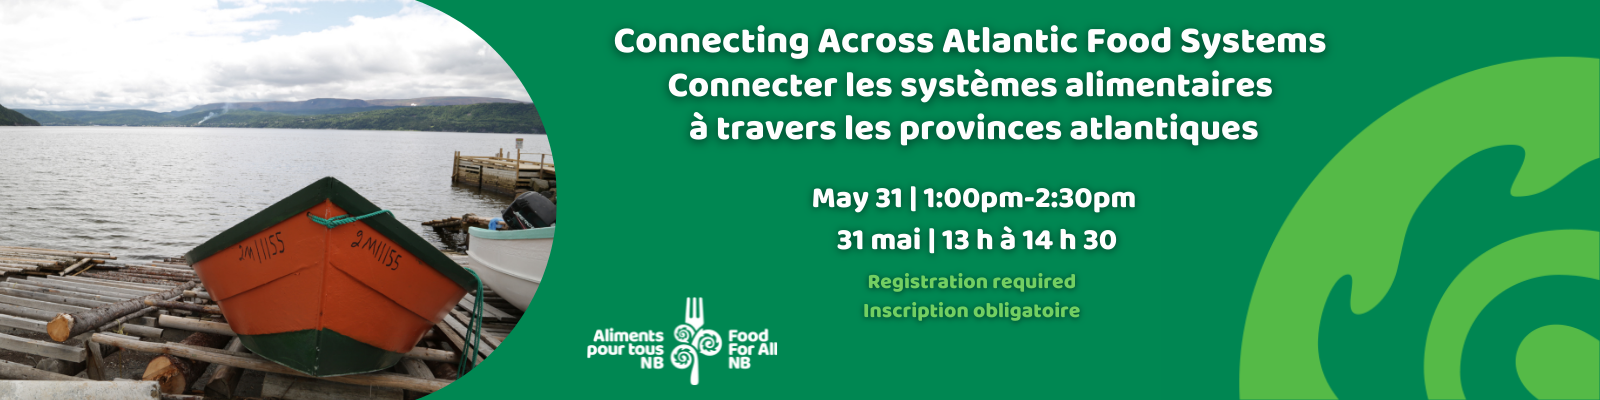 Connecter les systèmes alimentaires à travers les provinces atlantiques